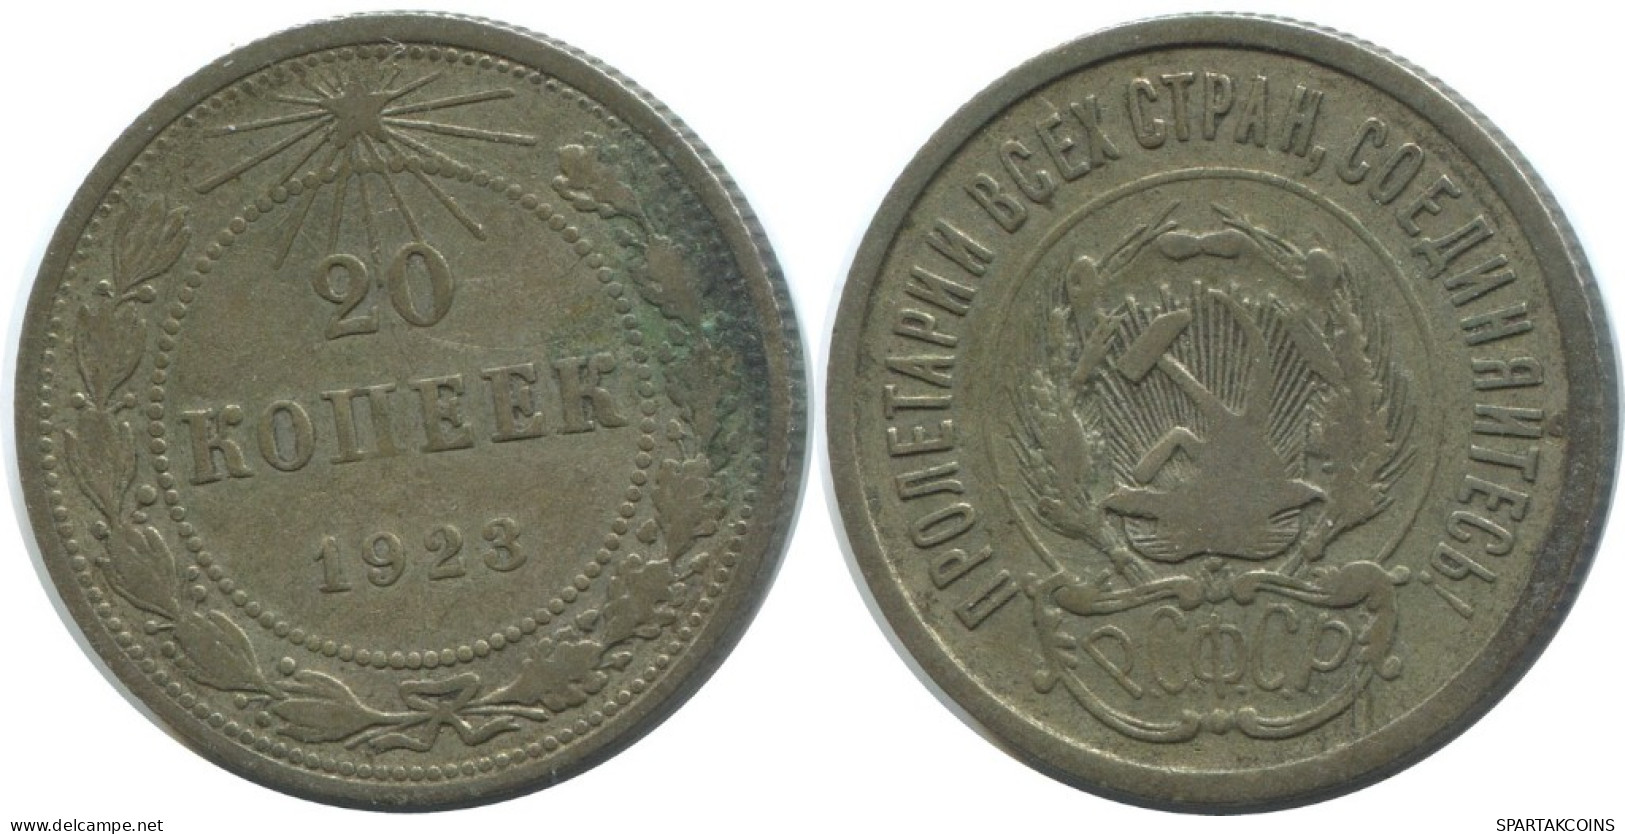 20 KOPEKS 1923 RUSSIA RSFSR SILVER Coin HIGH GRADE #AF422.4.U.A - Russland